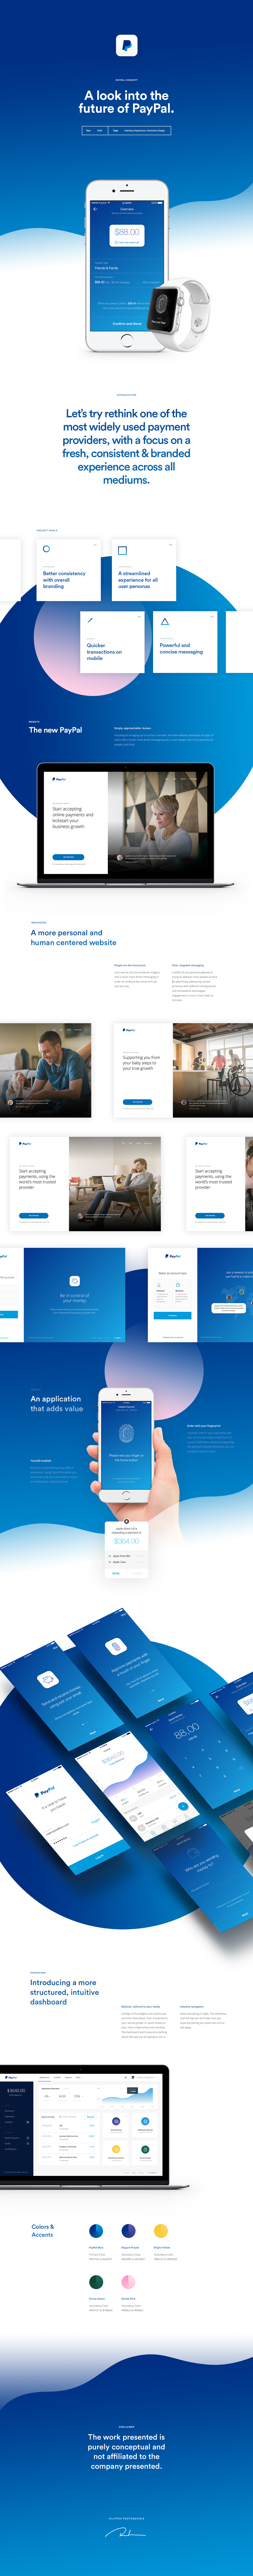 PayPal Concept UI design 